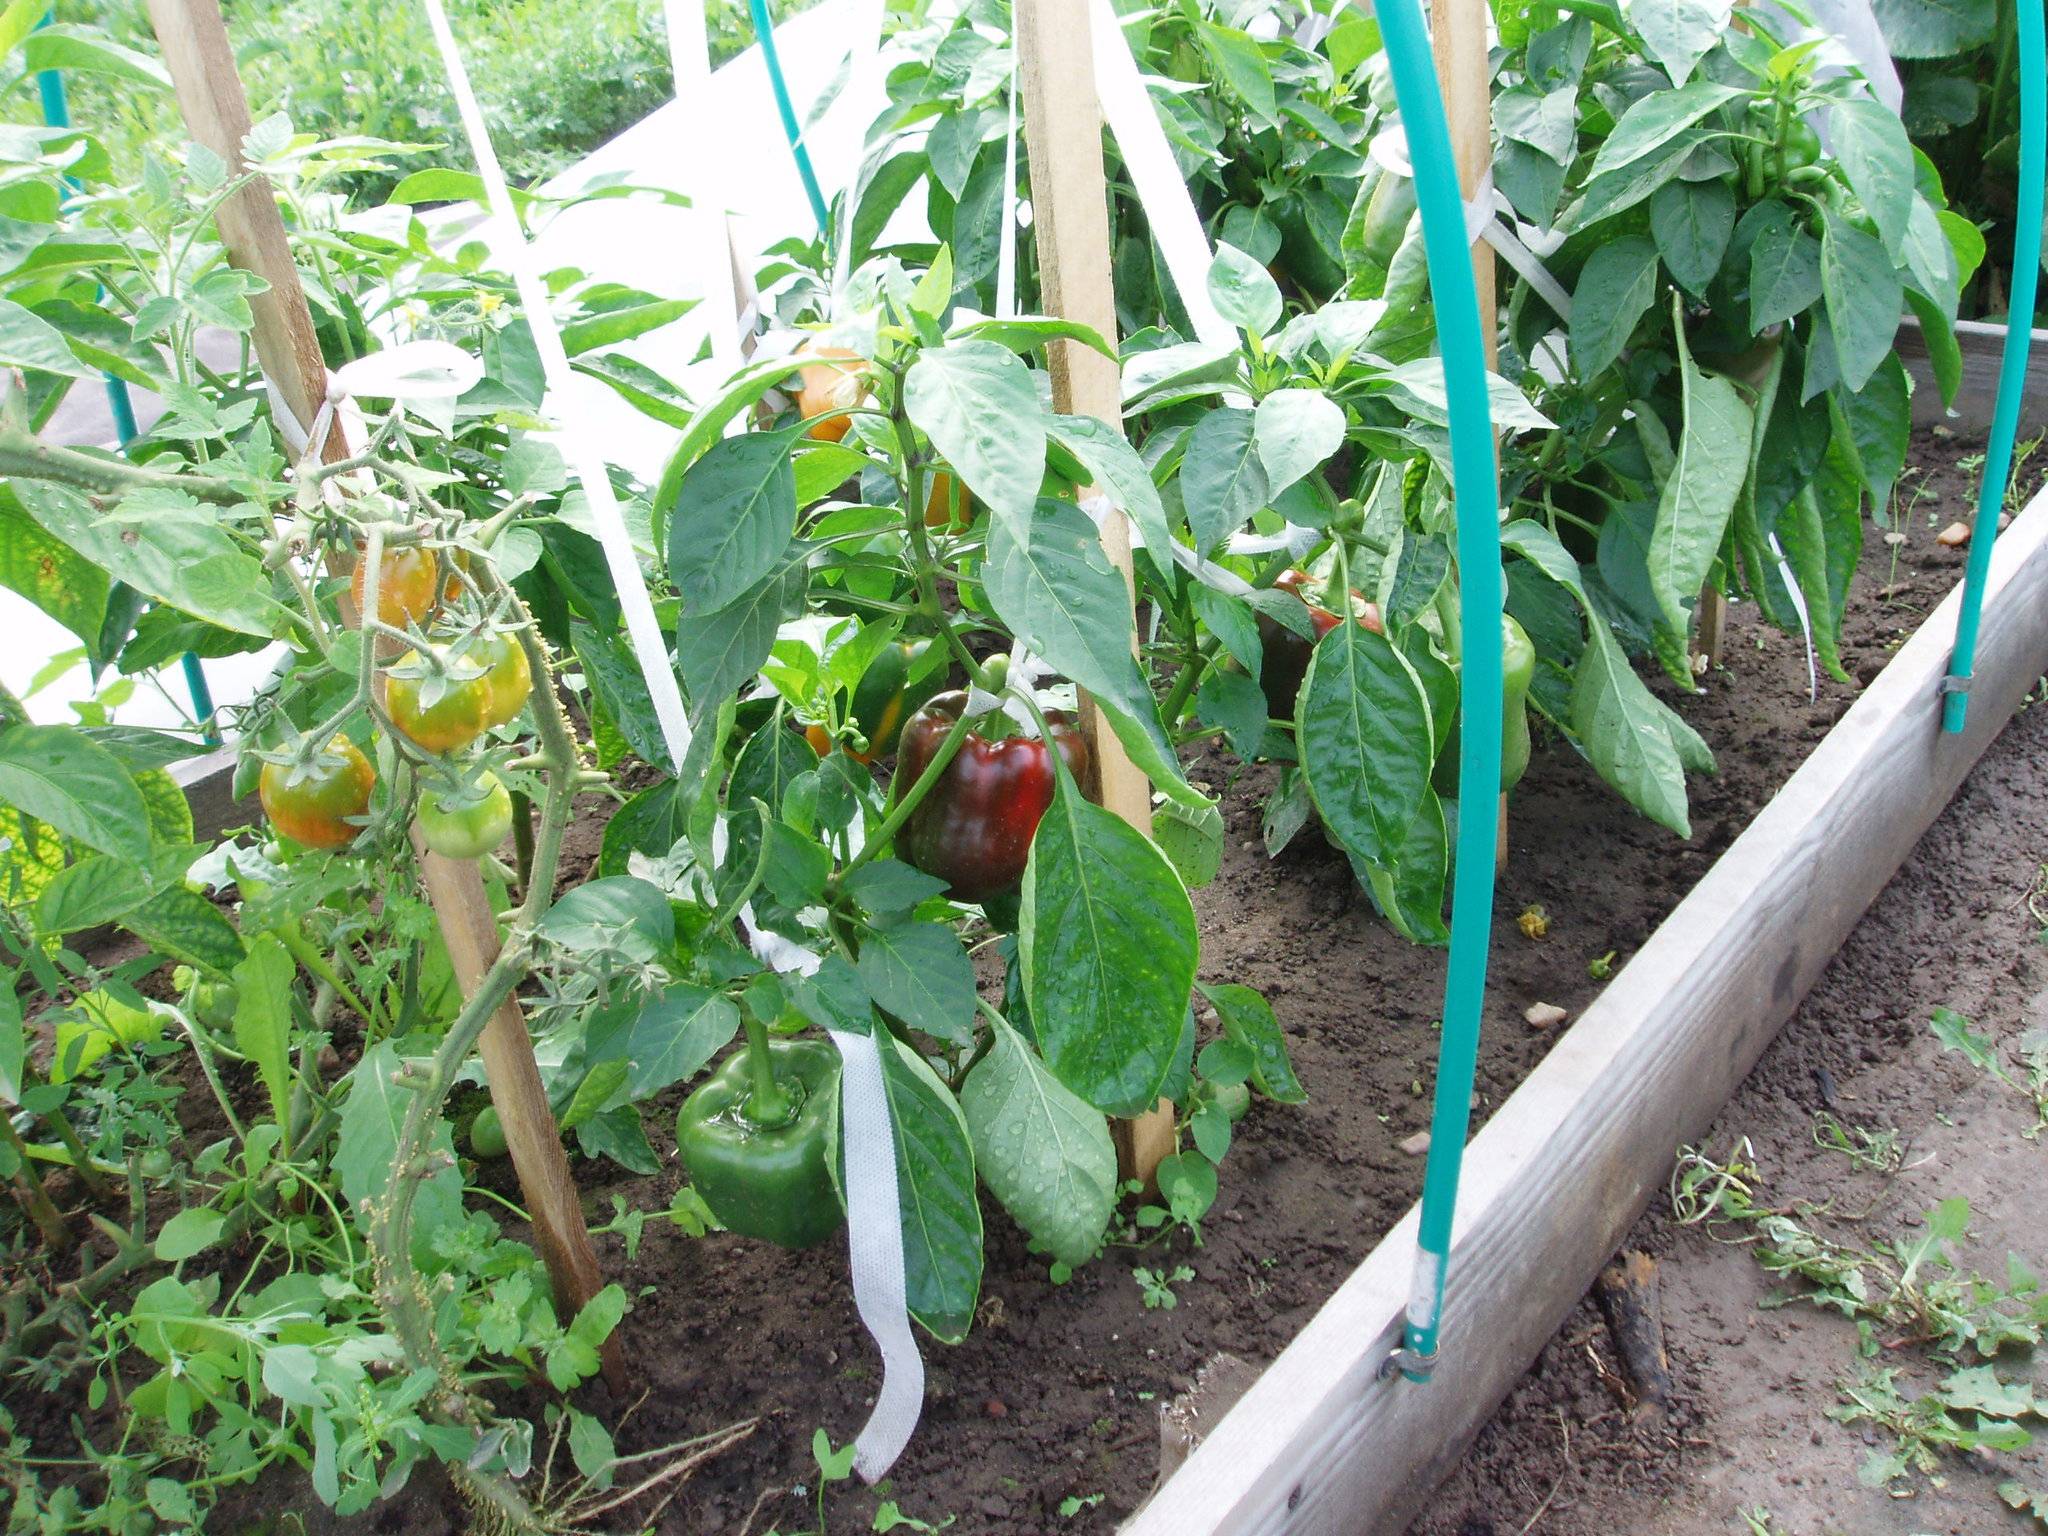 Что посадить в теплице вместе с помидорами